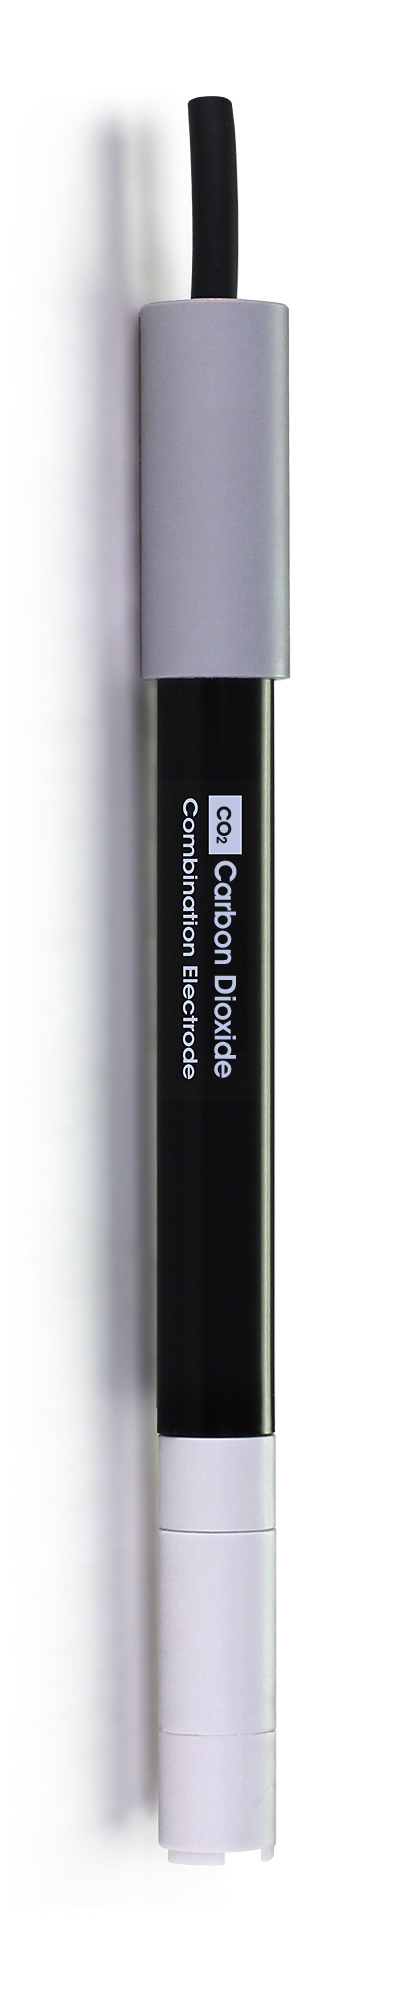 CS6210CO2 A Carbon Dioxide Ion Selective Electrode sensor